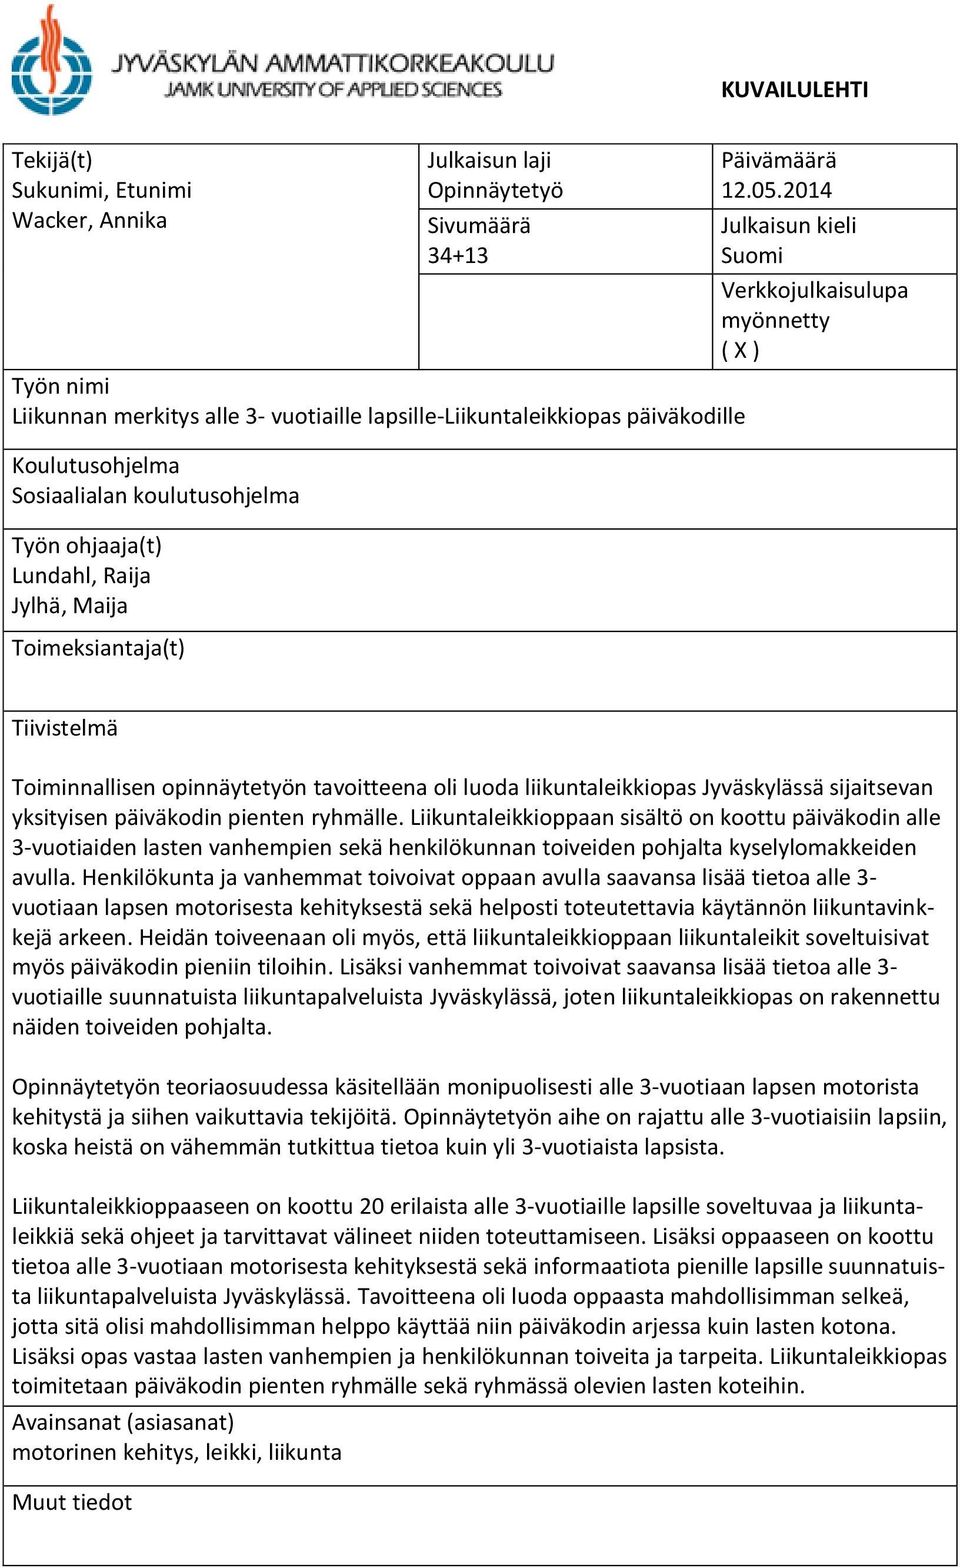 2014 Julkaisun kieli Suomi Verkkojulkaisulupa myönnetty ( X ) Tiivistelmä Toiminnallisen opinnäytetyön tavoitteena oli luoda liikuntaleikkiopas Jyväskylässä sijaitsevan yksityisen päiväkodin pienten